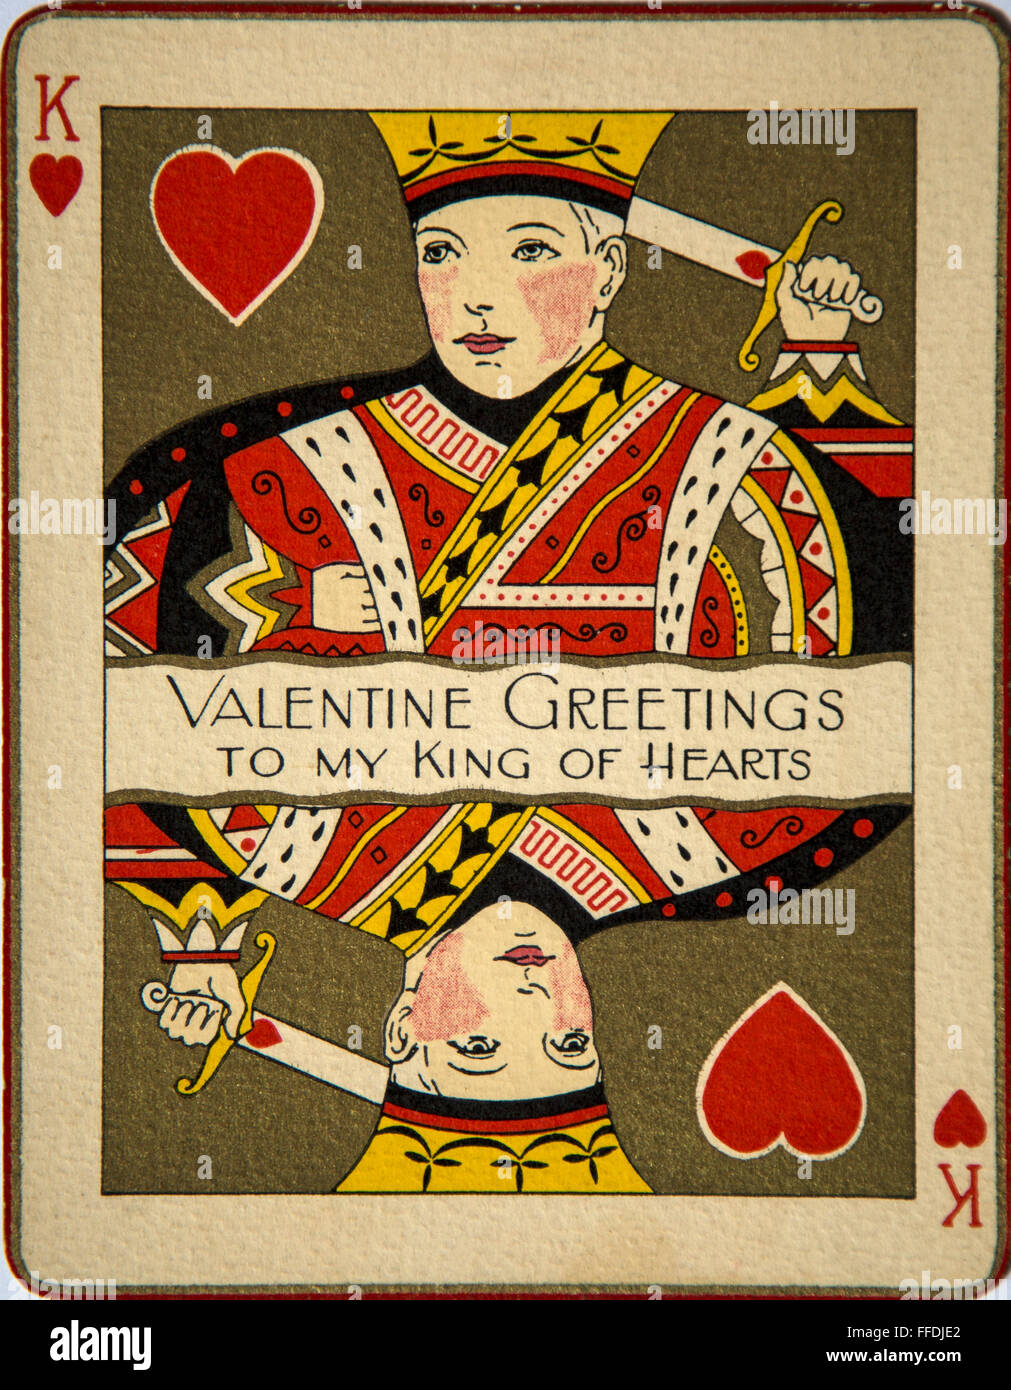 Eine alte Postkarte Werbung "Valentinstag Grüße an My King Of Hearts" in der Form wie eine Spielkarte. Stockfoto